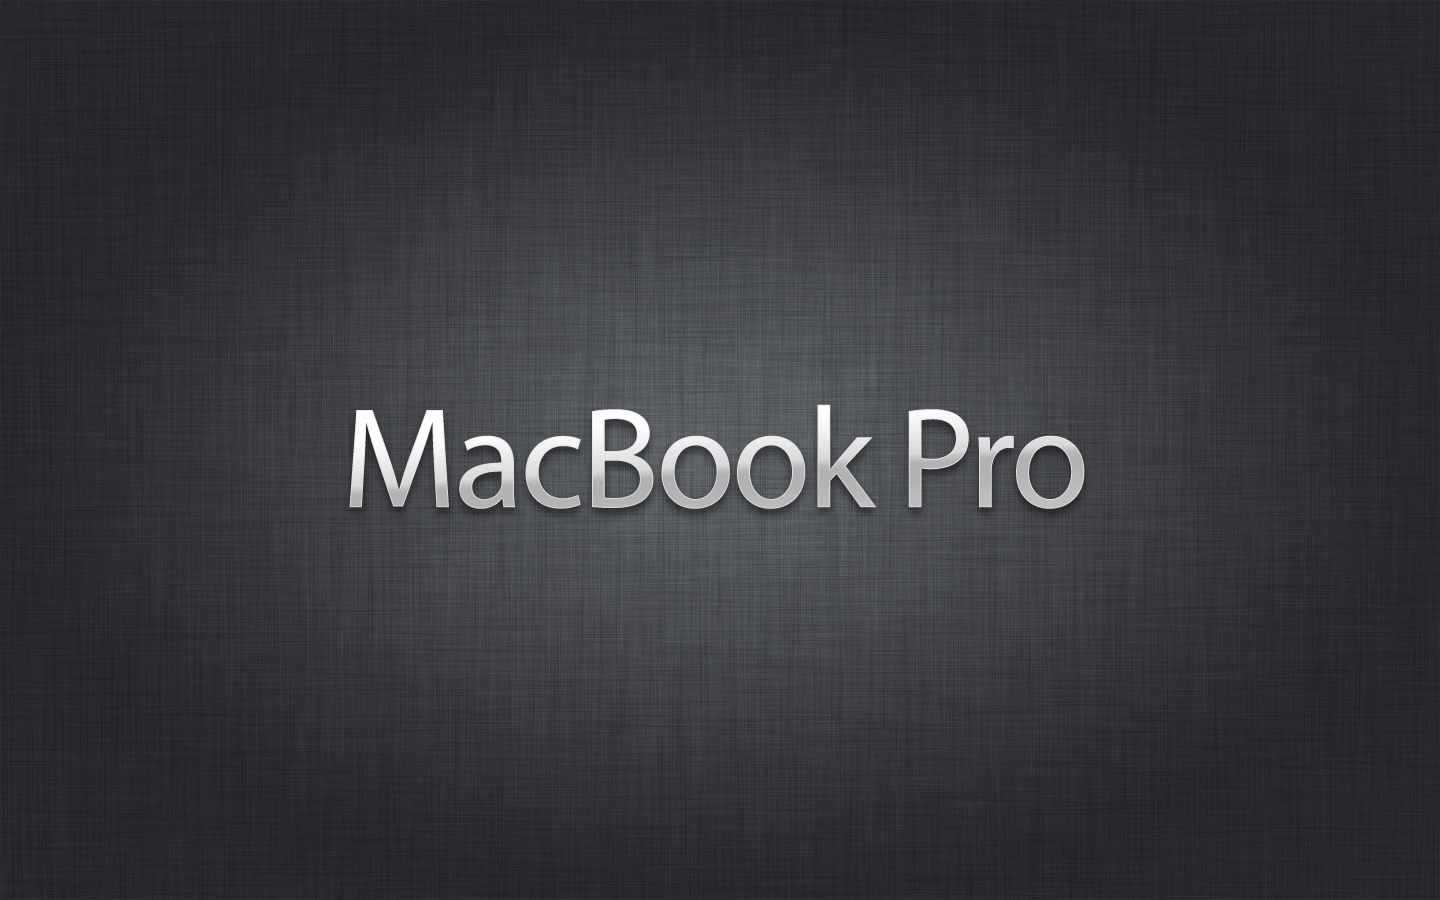 Macbook Pro Wallpaper Imagebank Biz